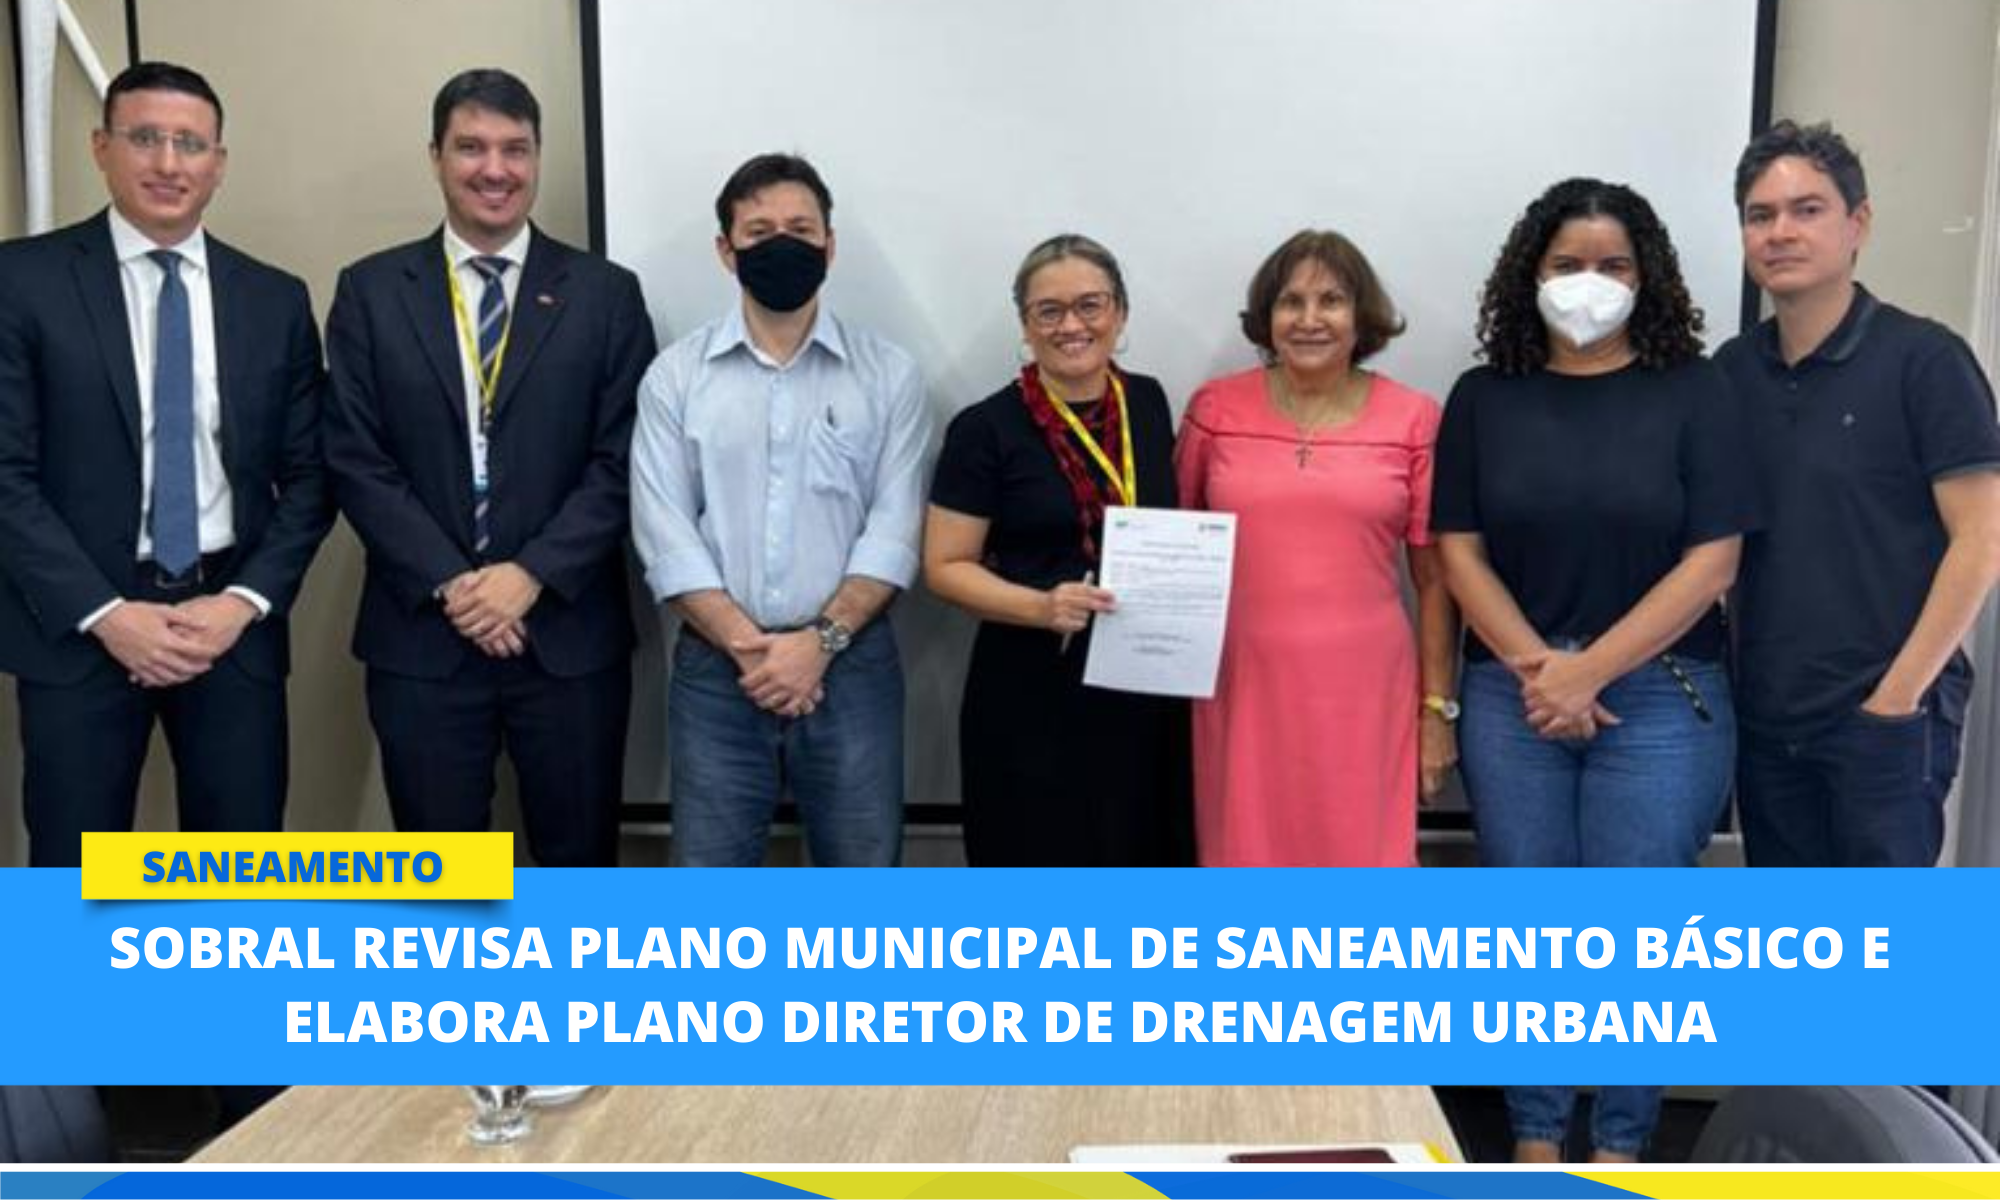 Secretários assinam ordem de serviço para revisão do Plano Municipal de Sanea...